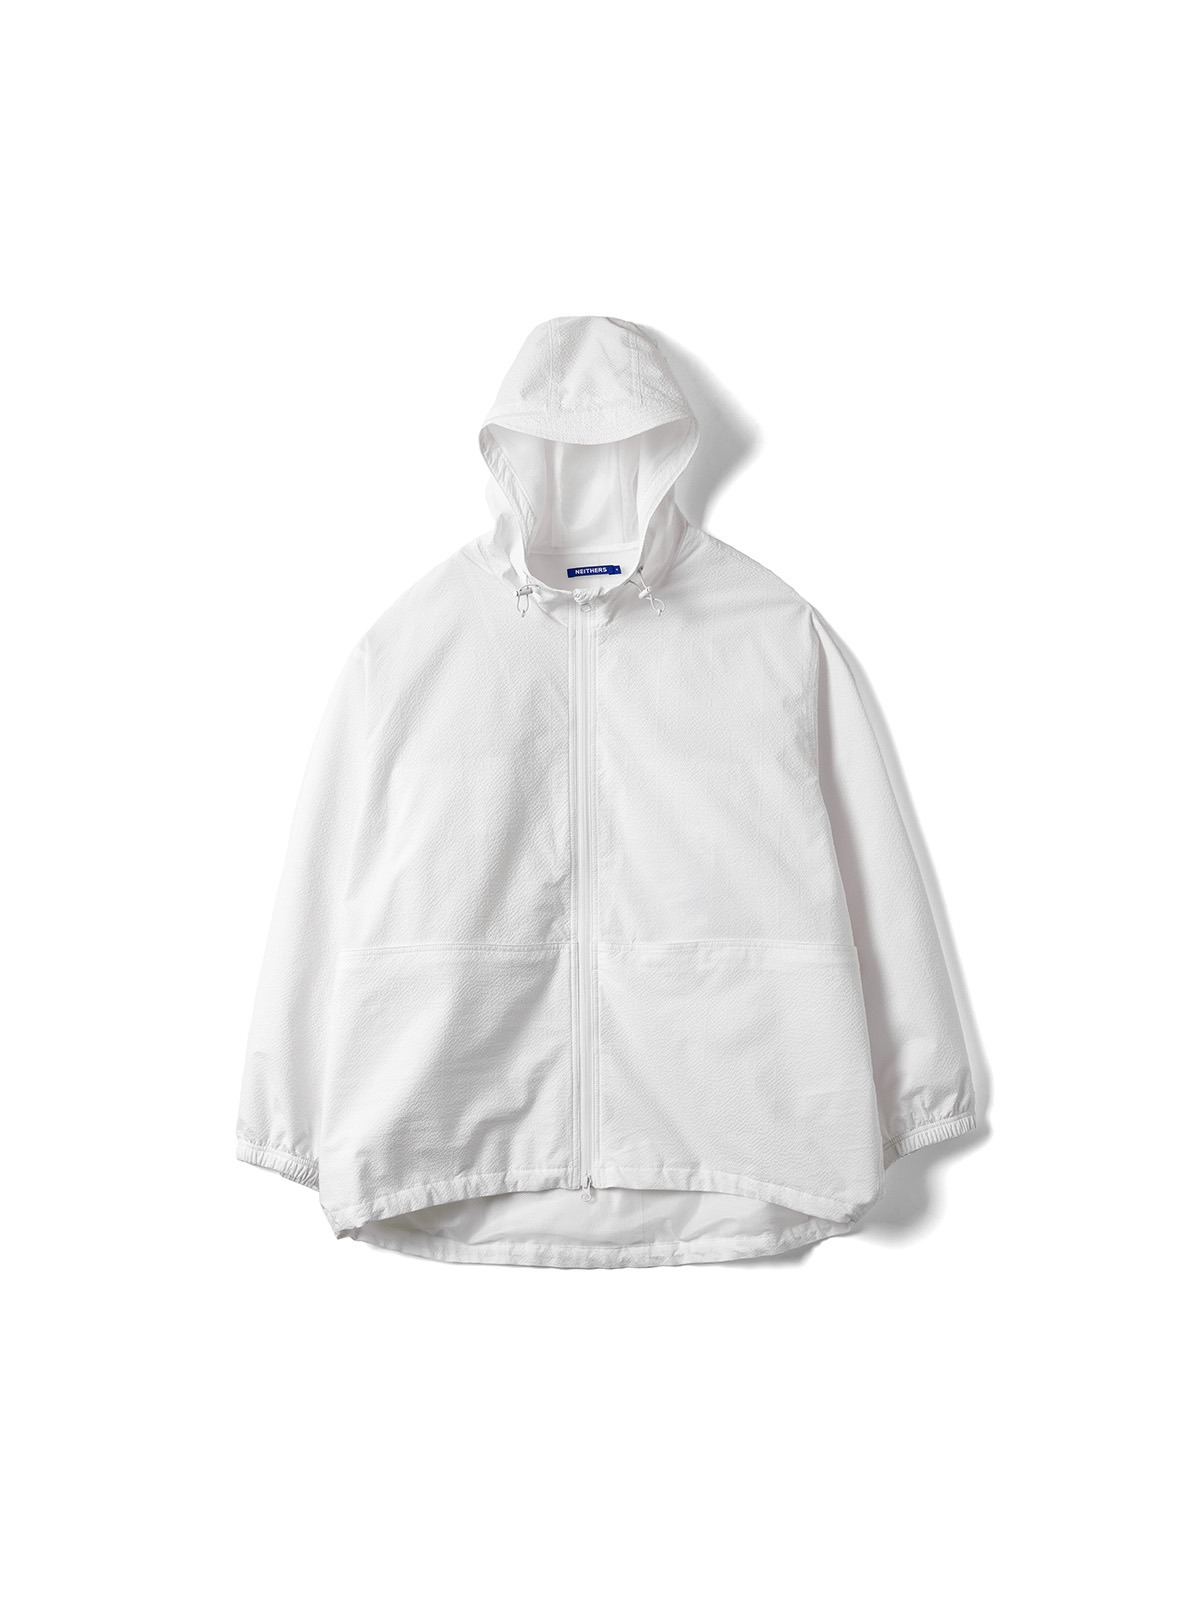 Camper Hooded Jacket (Off White)